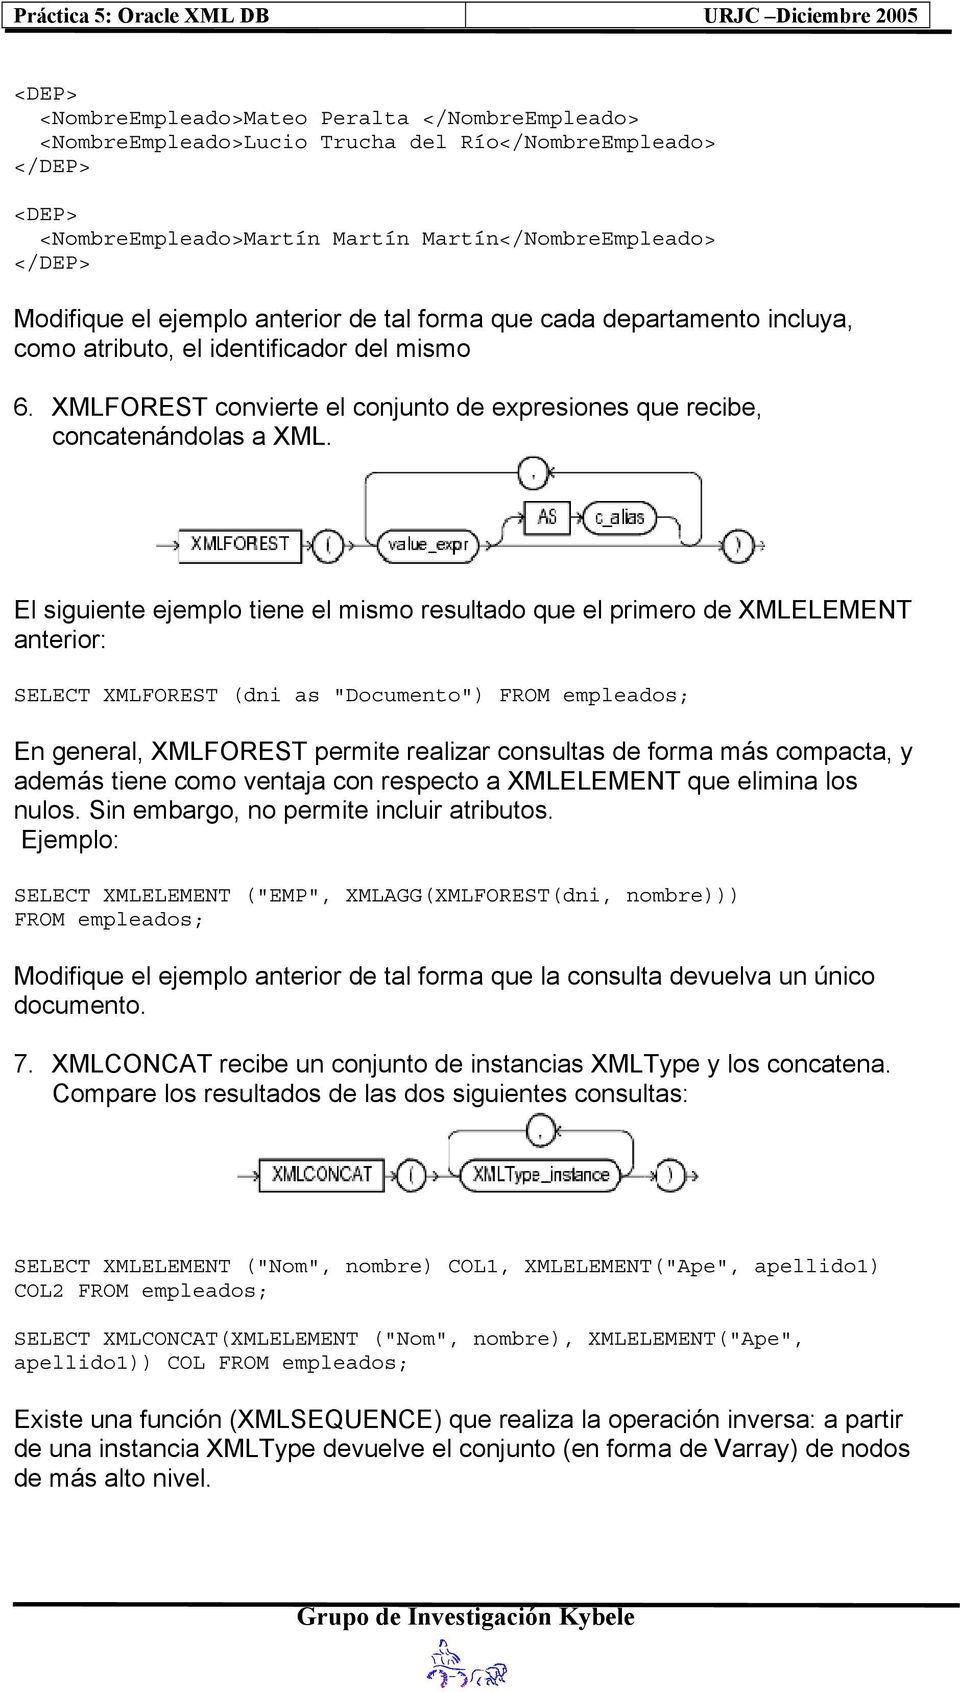 El siguiente ejemplo tiene el mismo resultado que el primero de XMLELEMENT anterior: SELECT XMLFOREST (dni as "Documento") En general, XMLFOREST permite realizar consultas de forma más compacta, y